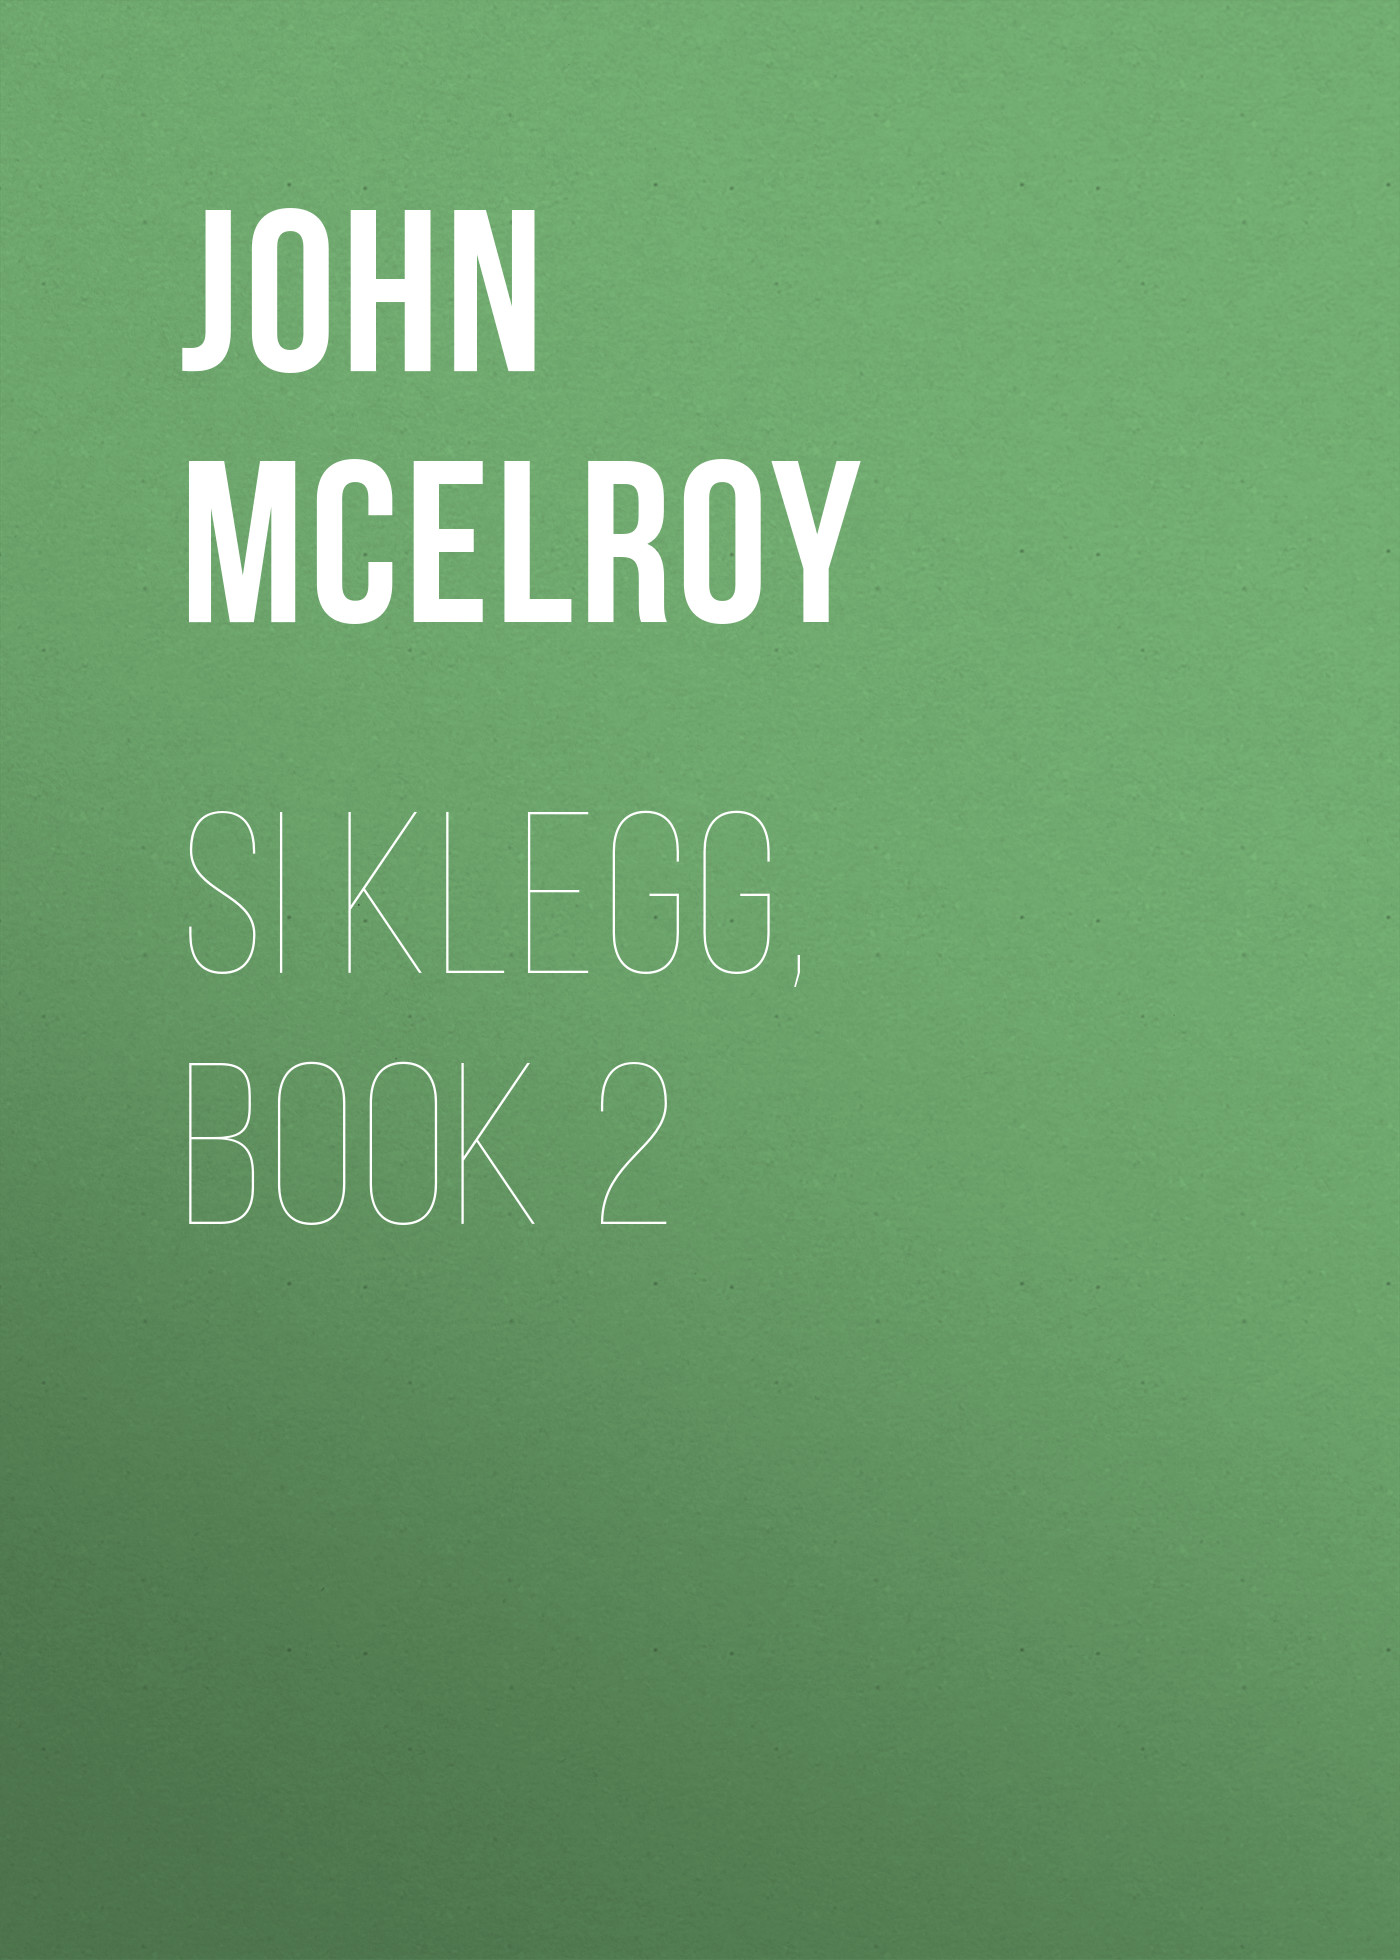 Книга Si Klegg, Book 2 из серии , созданная John McElroy, может относится к жанру Зарубежная классика, История, Зарубежная образовательная литература, Зарубежная старинная литература. Стоимость электронной книги Si Klegg, Book 2 с идентификатором 36324236 составляет 0 руб.